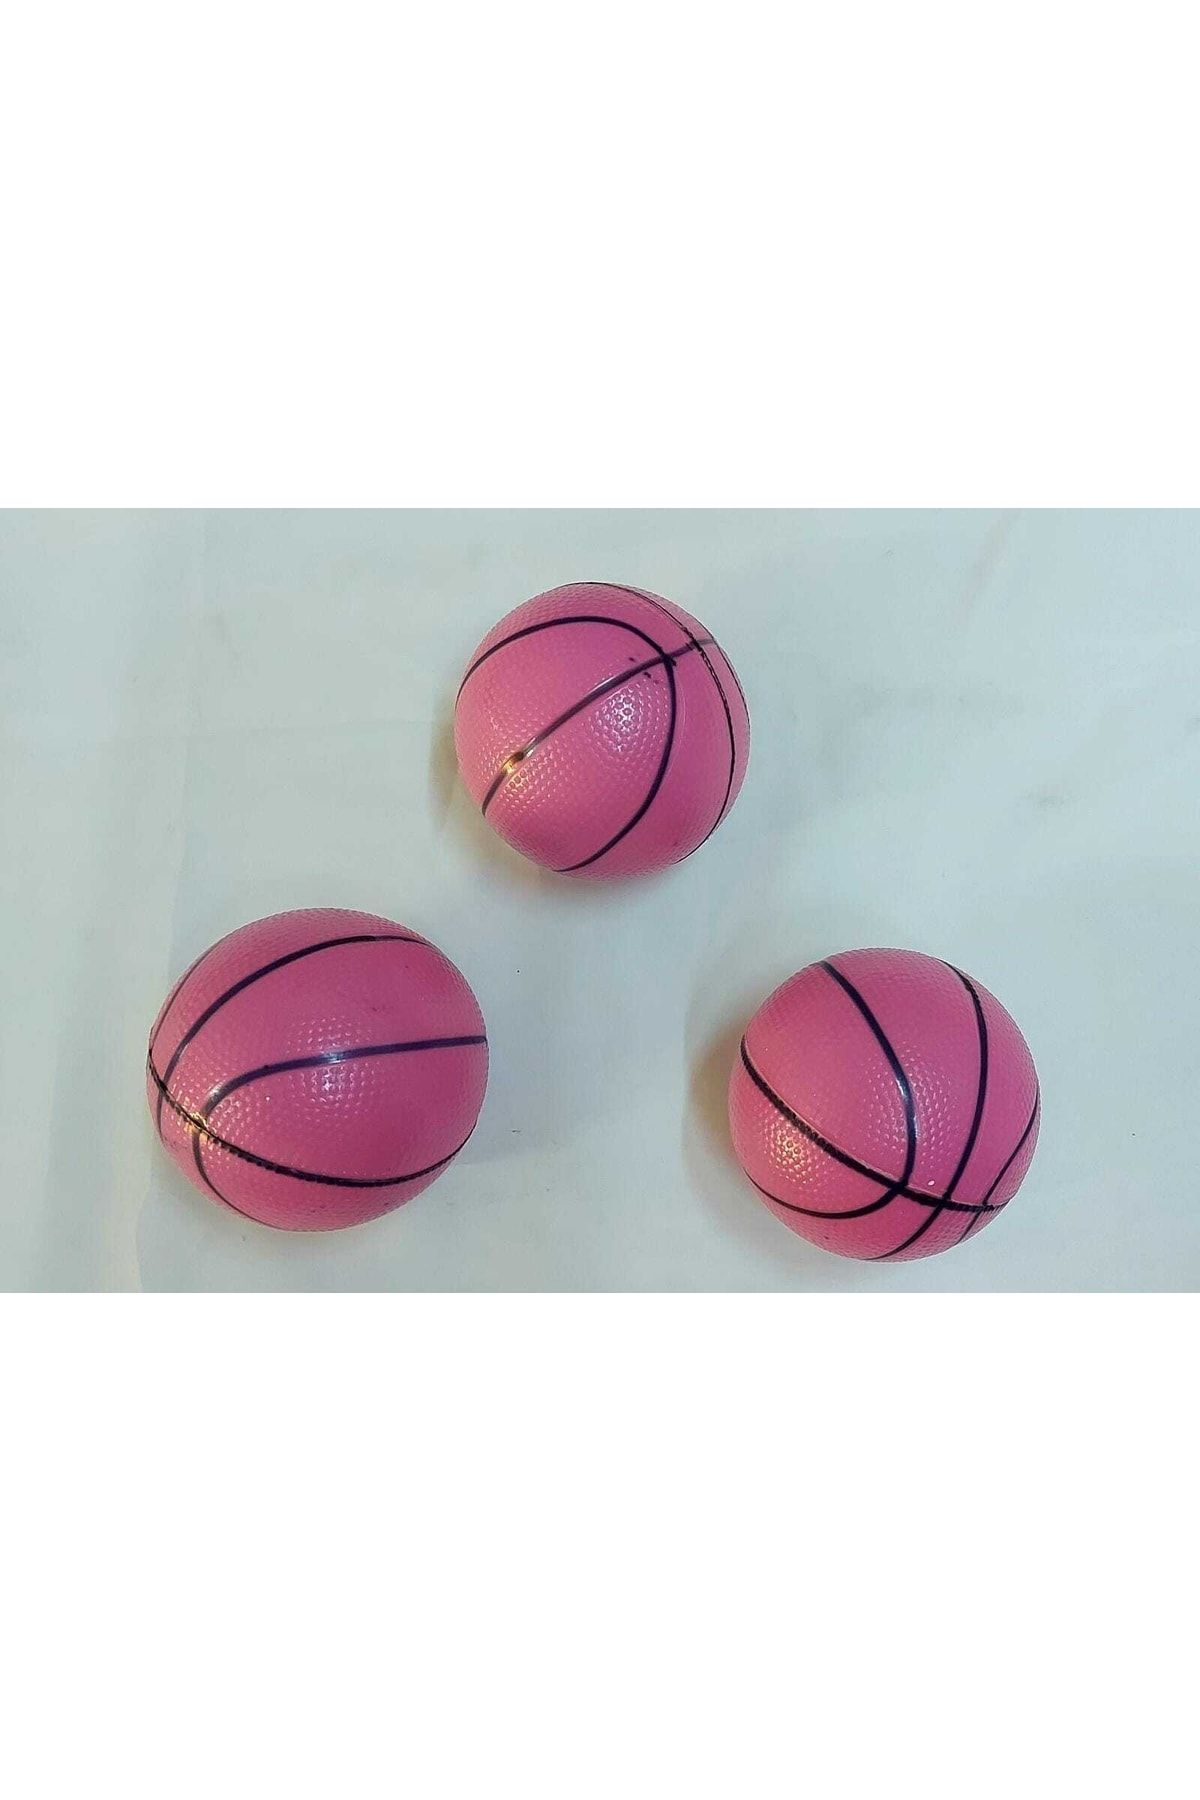 İlerigrup 3’lü Küçük Top Basketbol Topu Plastik Top